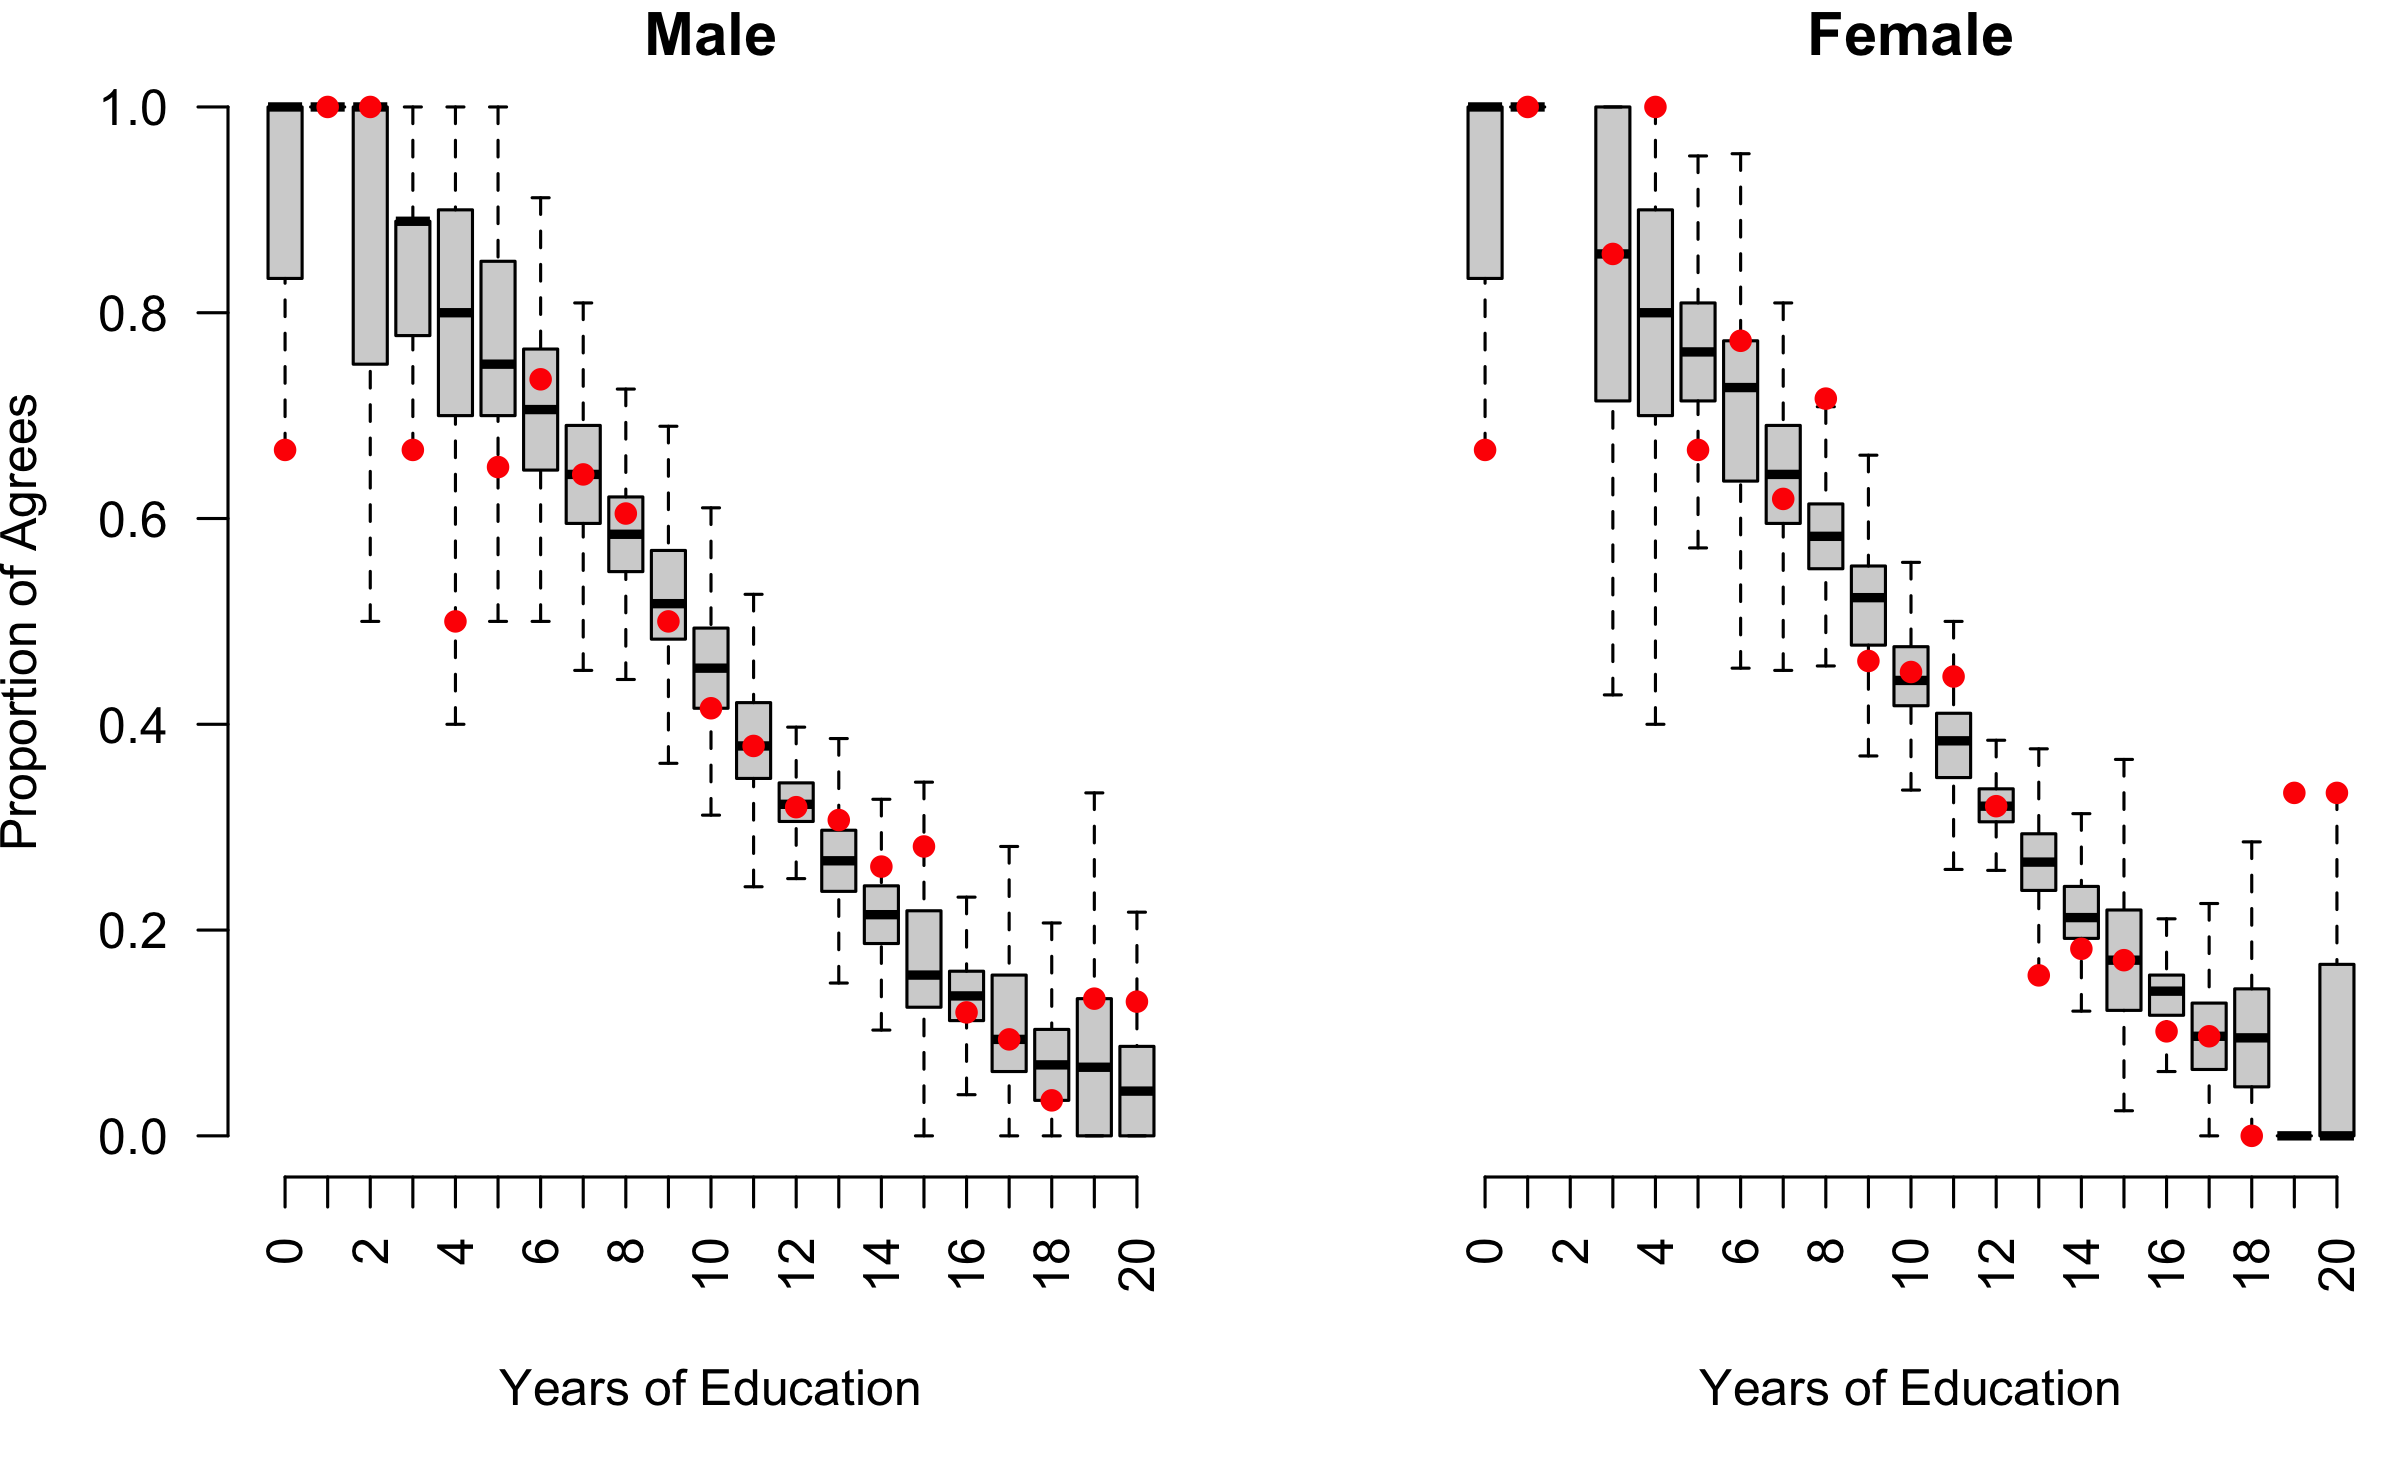 Posterior predictive boxplots vs. observed datapoints